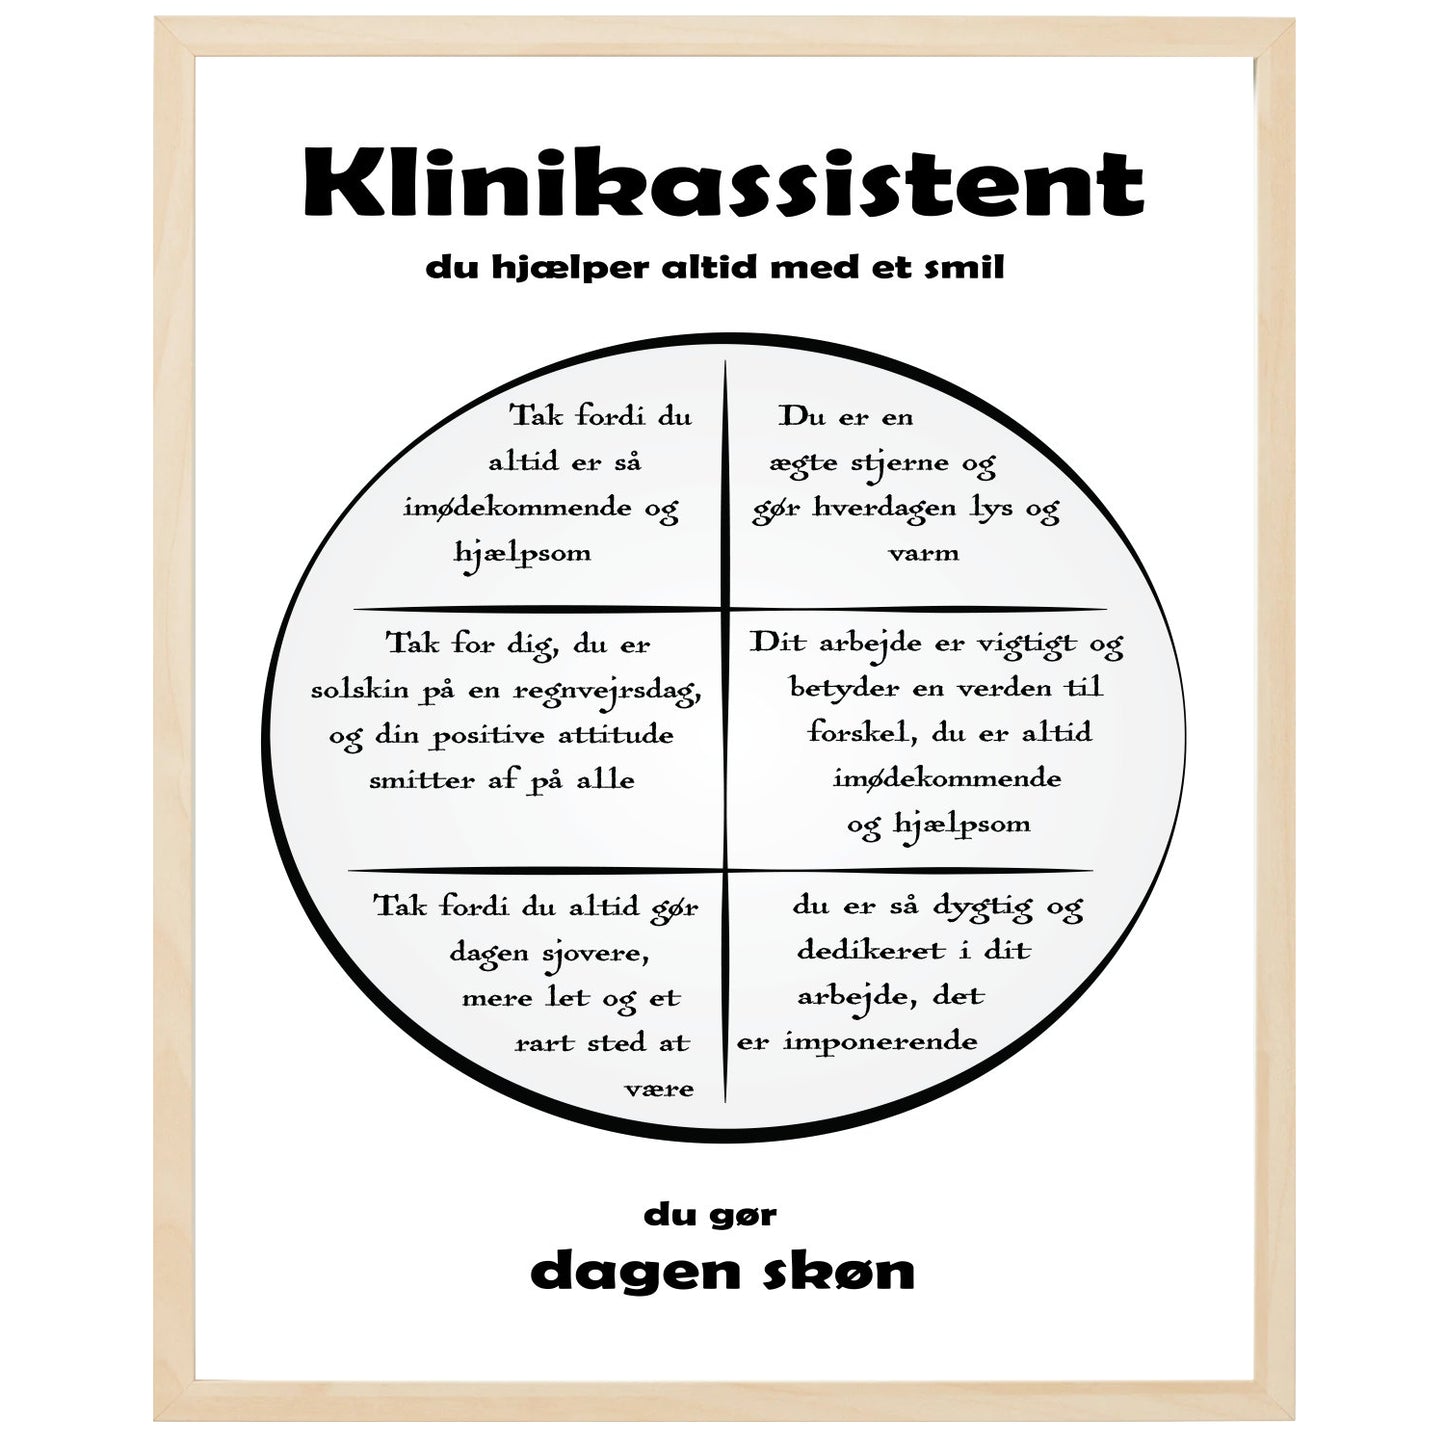 En plakat med overskriften Klinikassistent, en rustik cirkel og indeni cirklen mange positive sætninger som beskriver en Klinikassistent